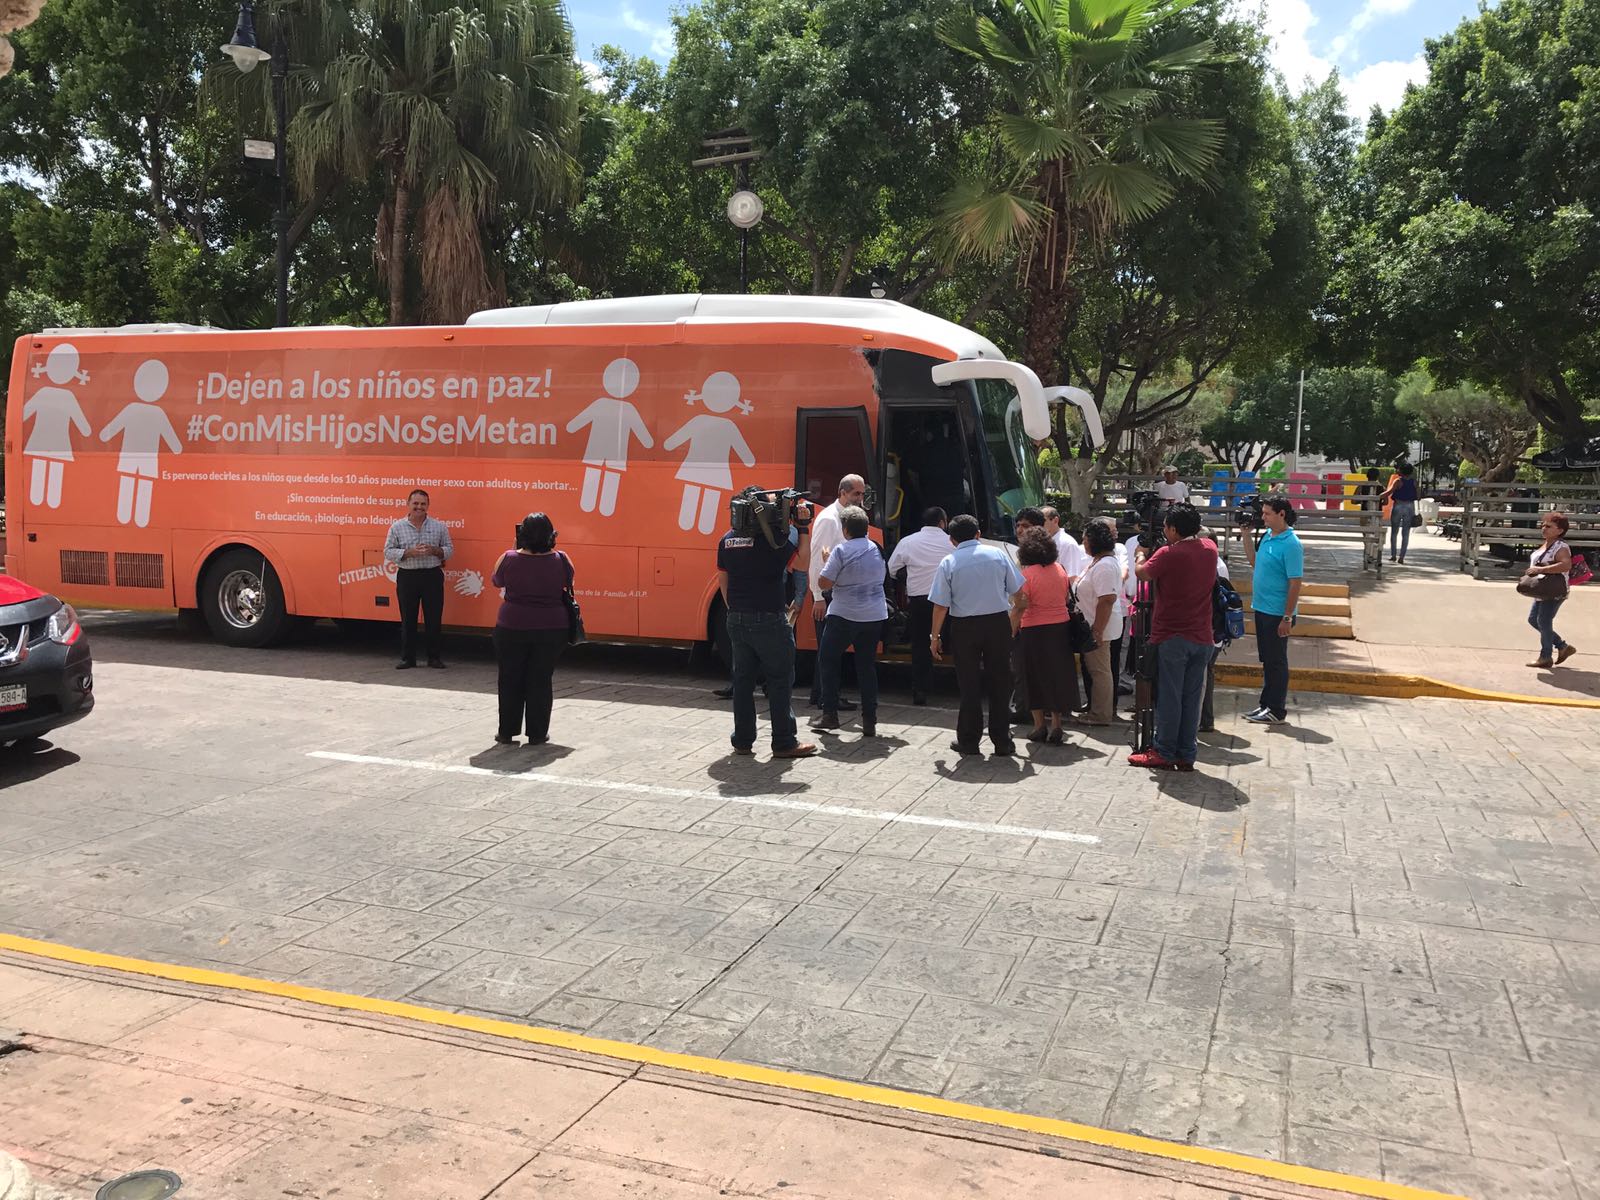 El domingo llega a Xalapa el Autobús de la Libertad; polémico por su mensaje antidiversidad